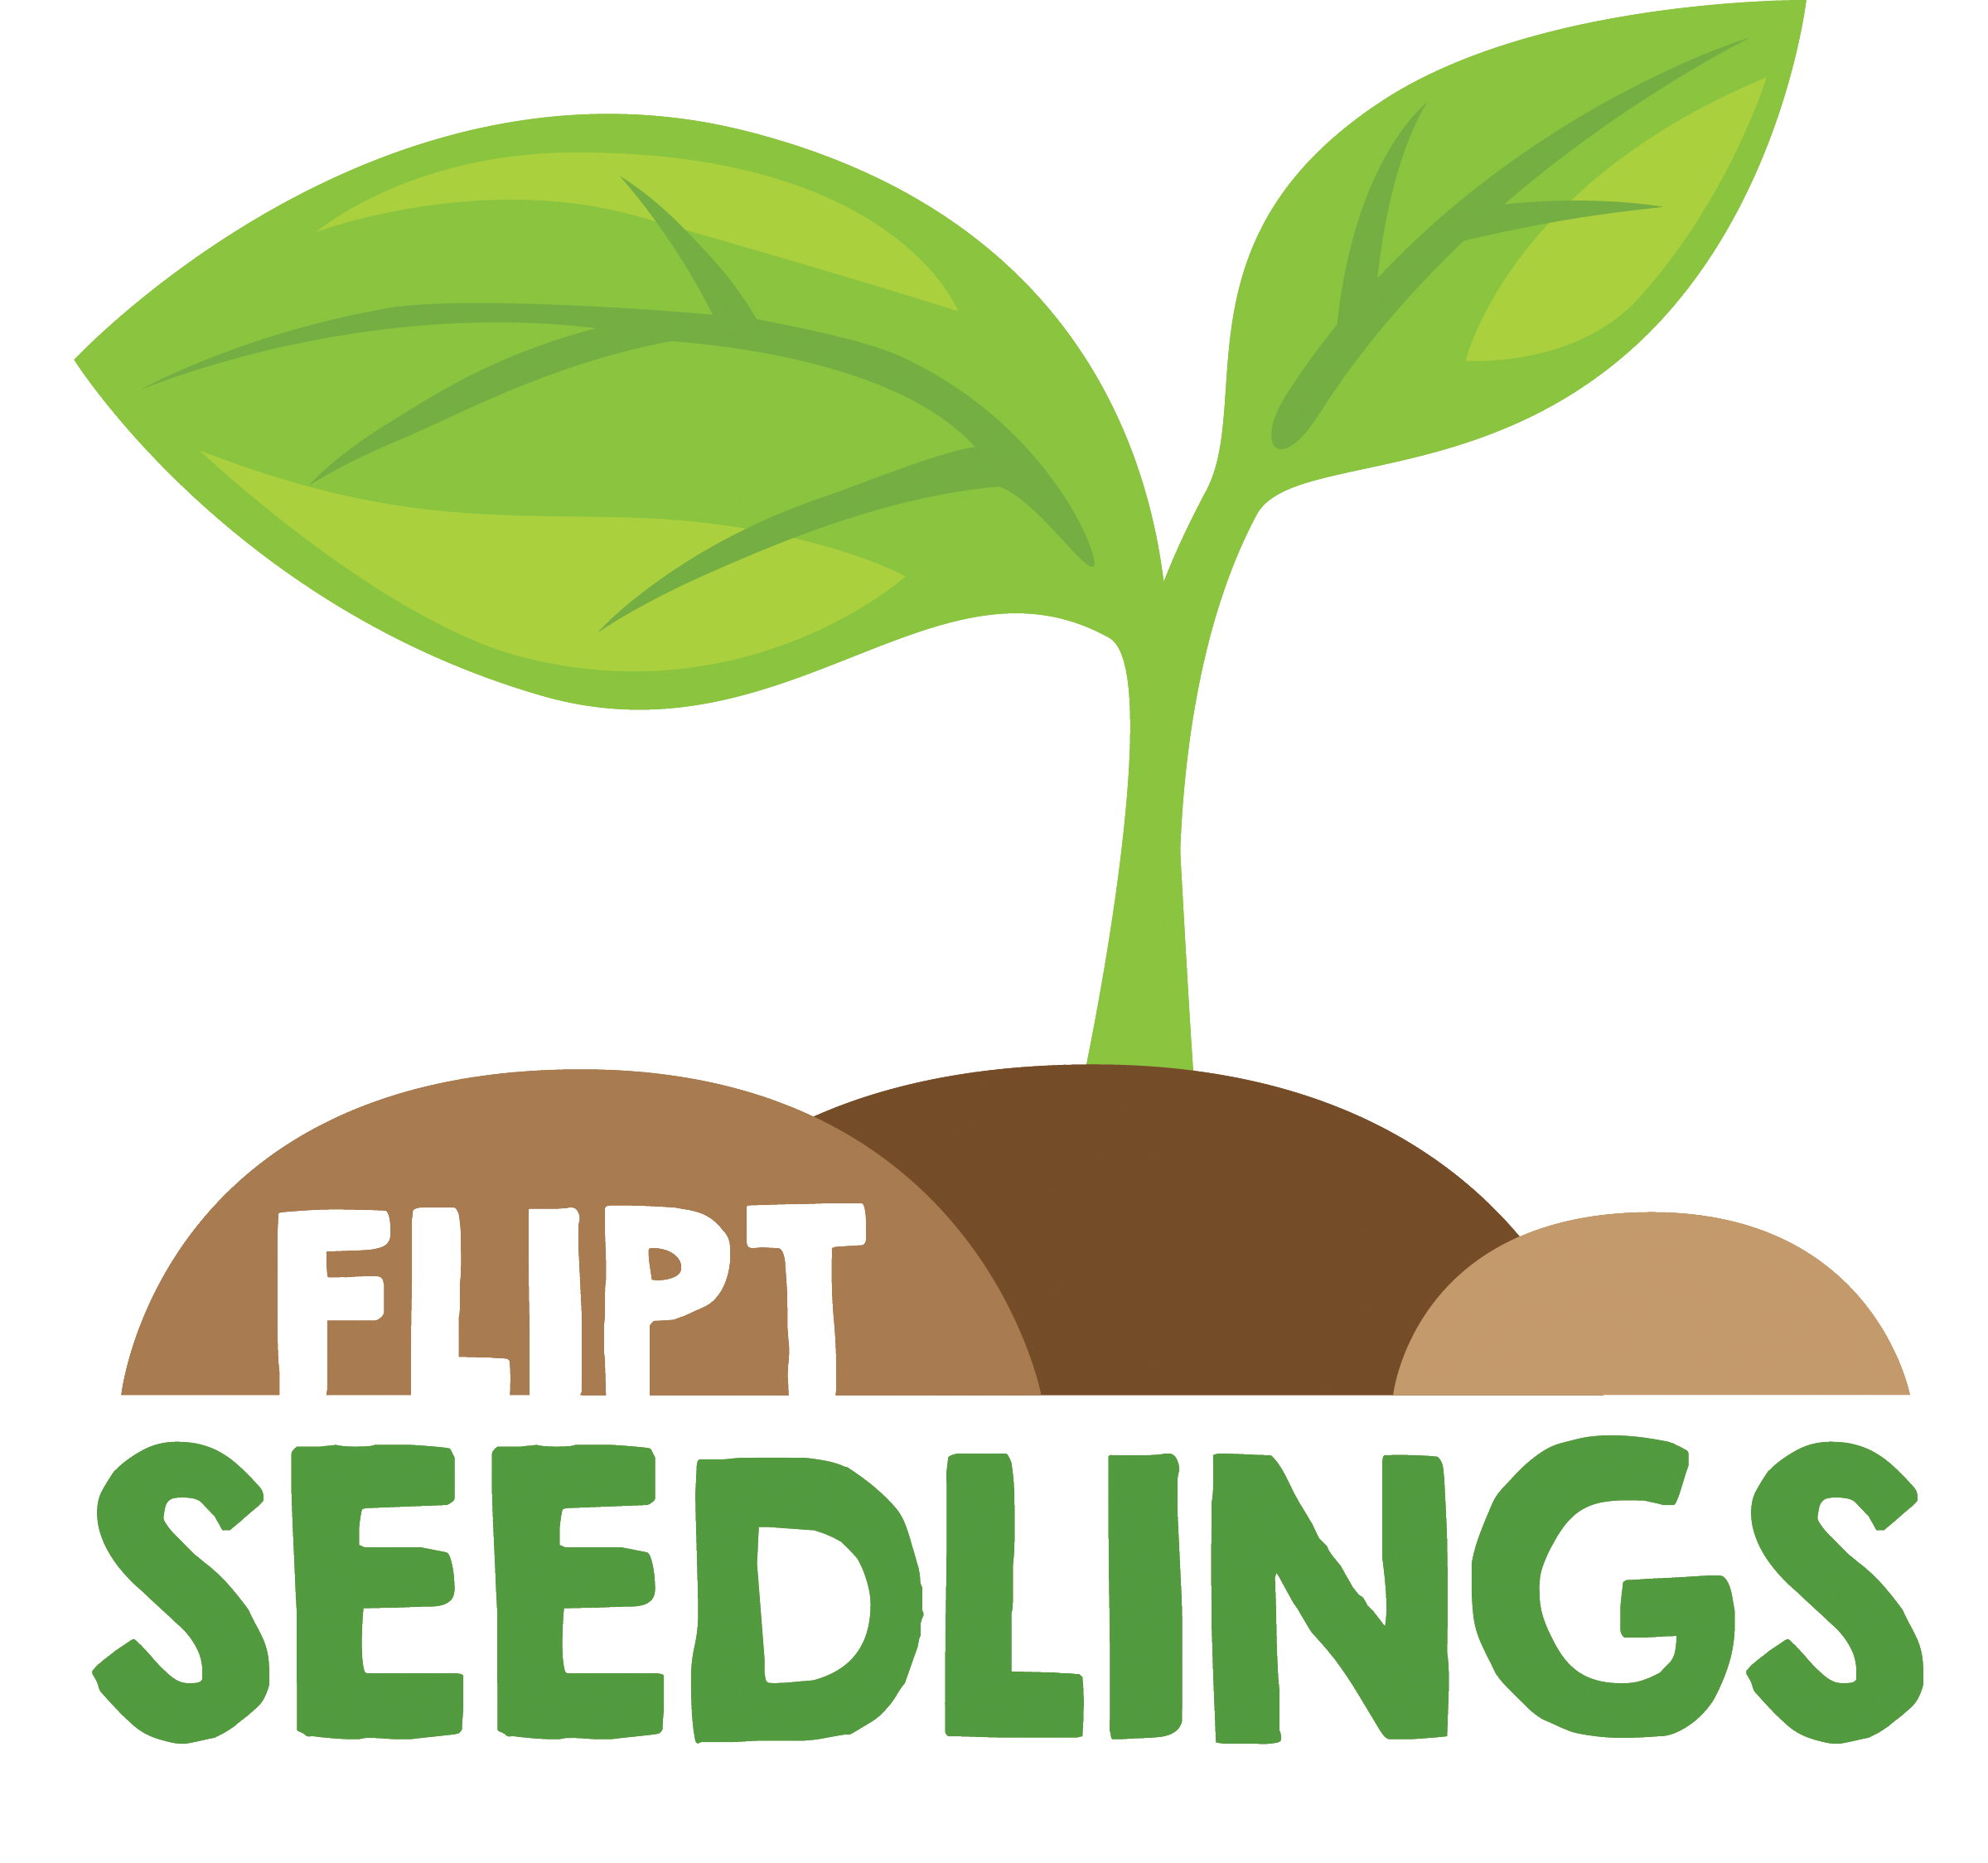 Seedling clipart baby. Seedlings flipside church null